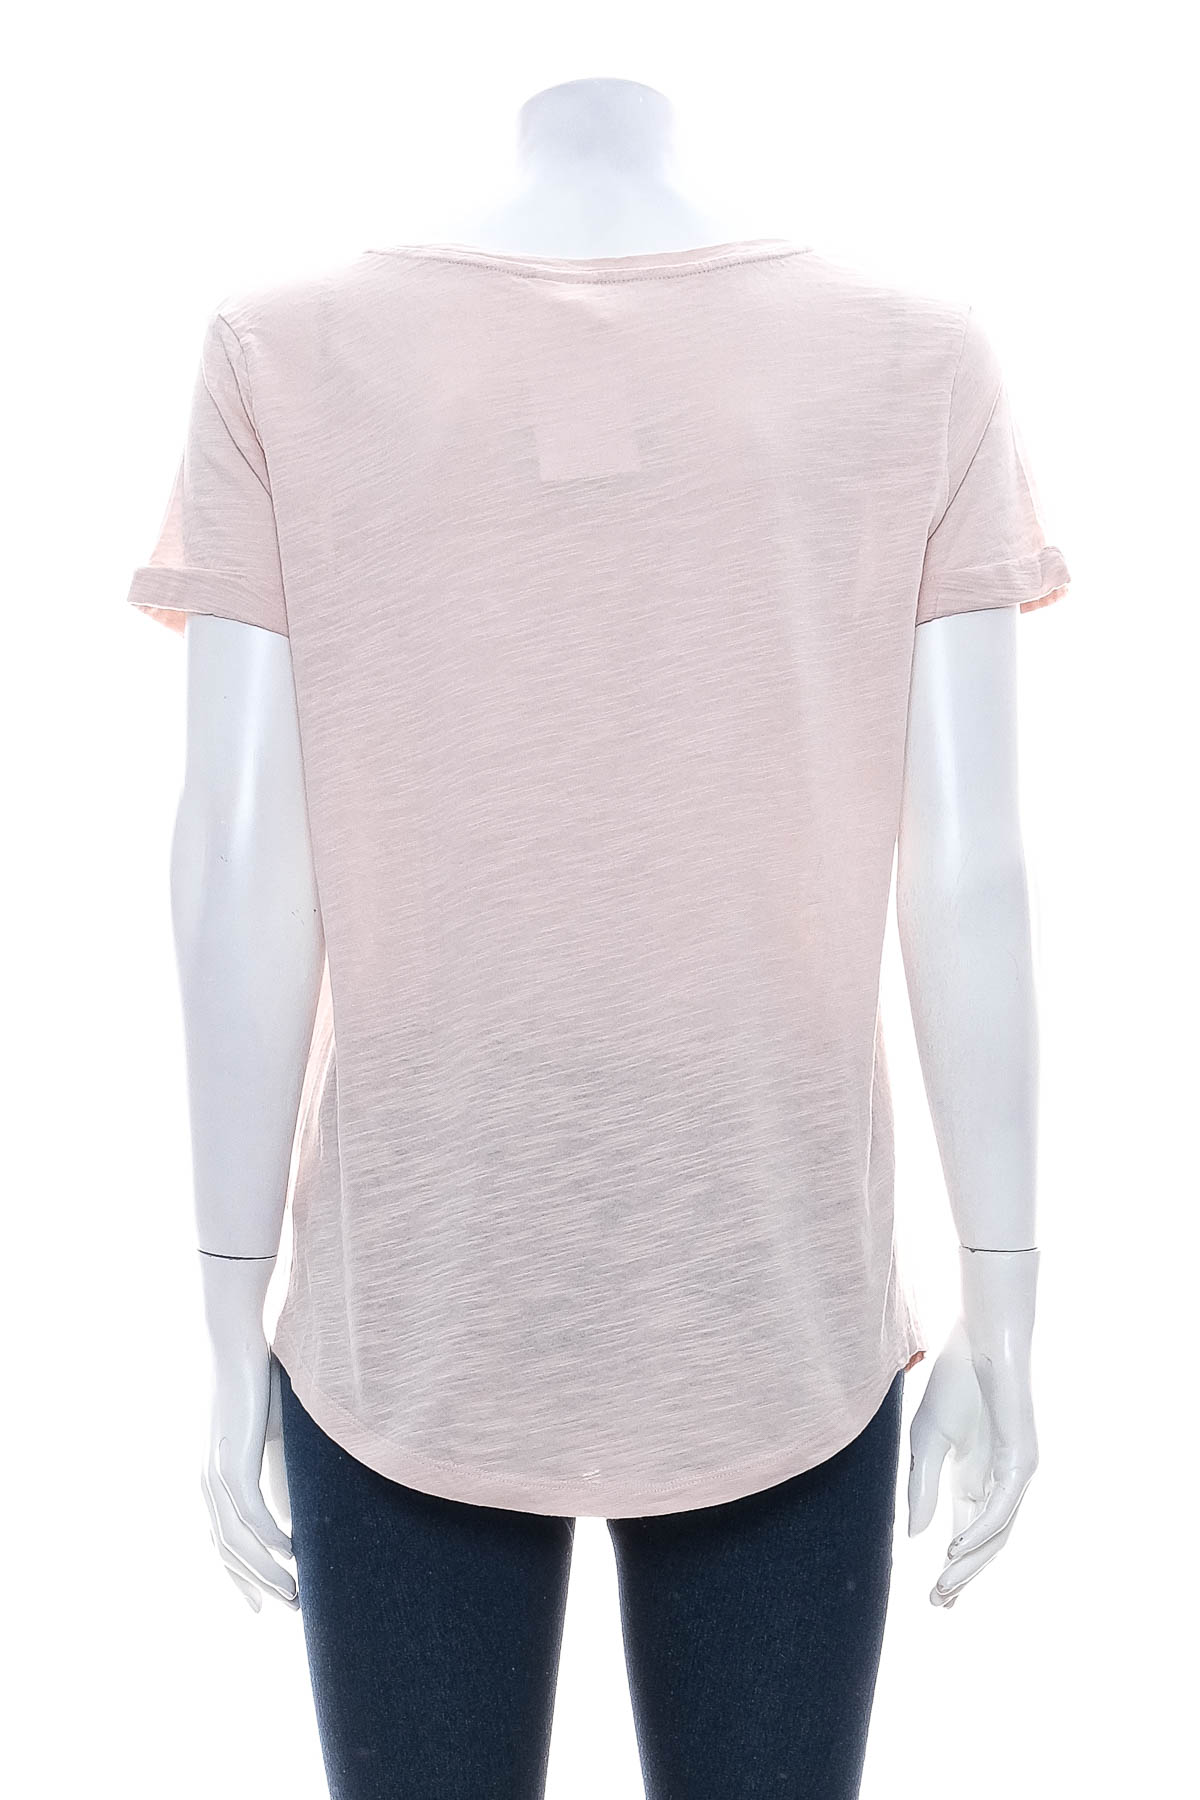 Γυναικείο μπλουζάκι - H&M Basic - 1